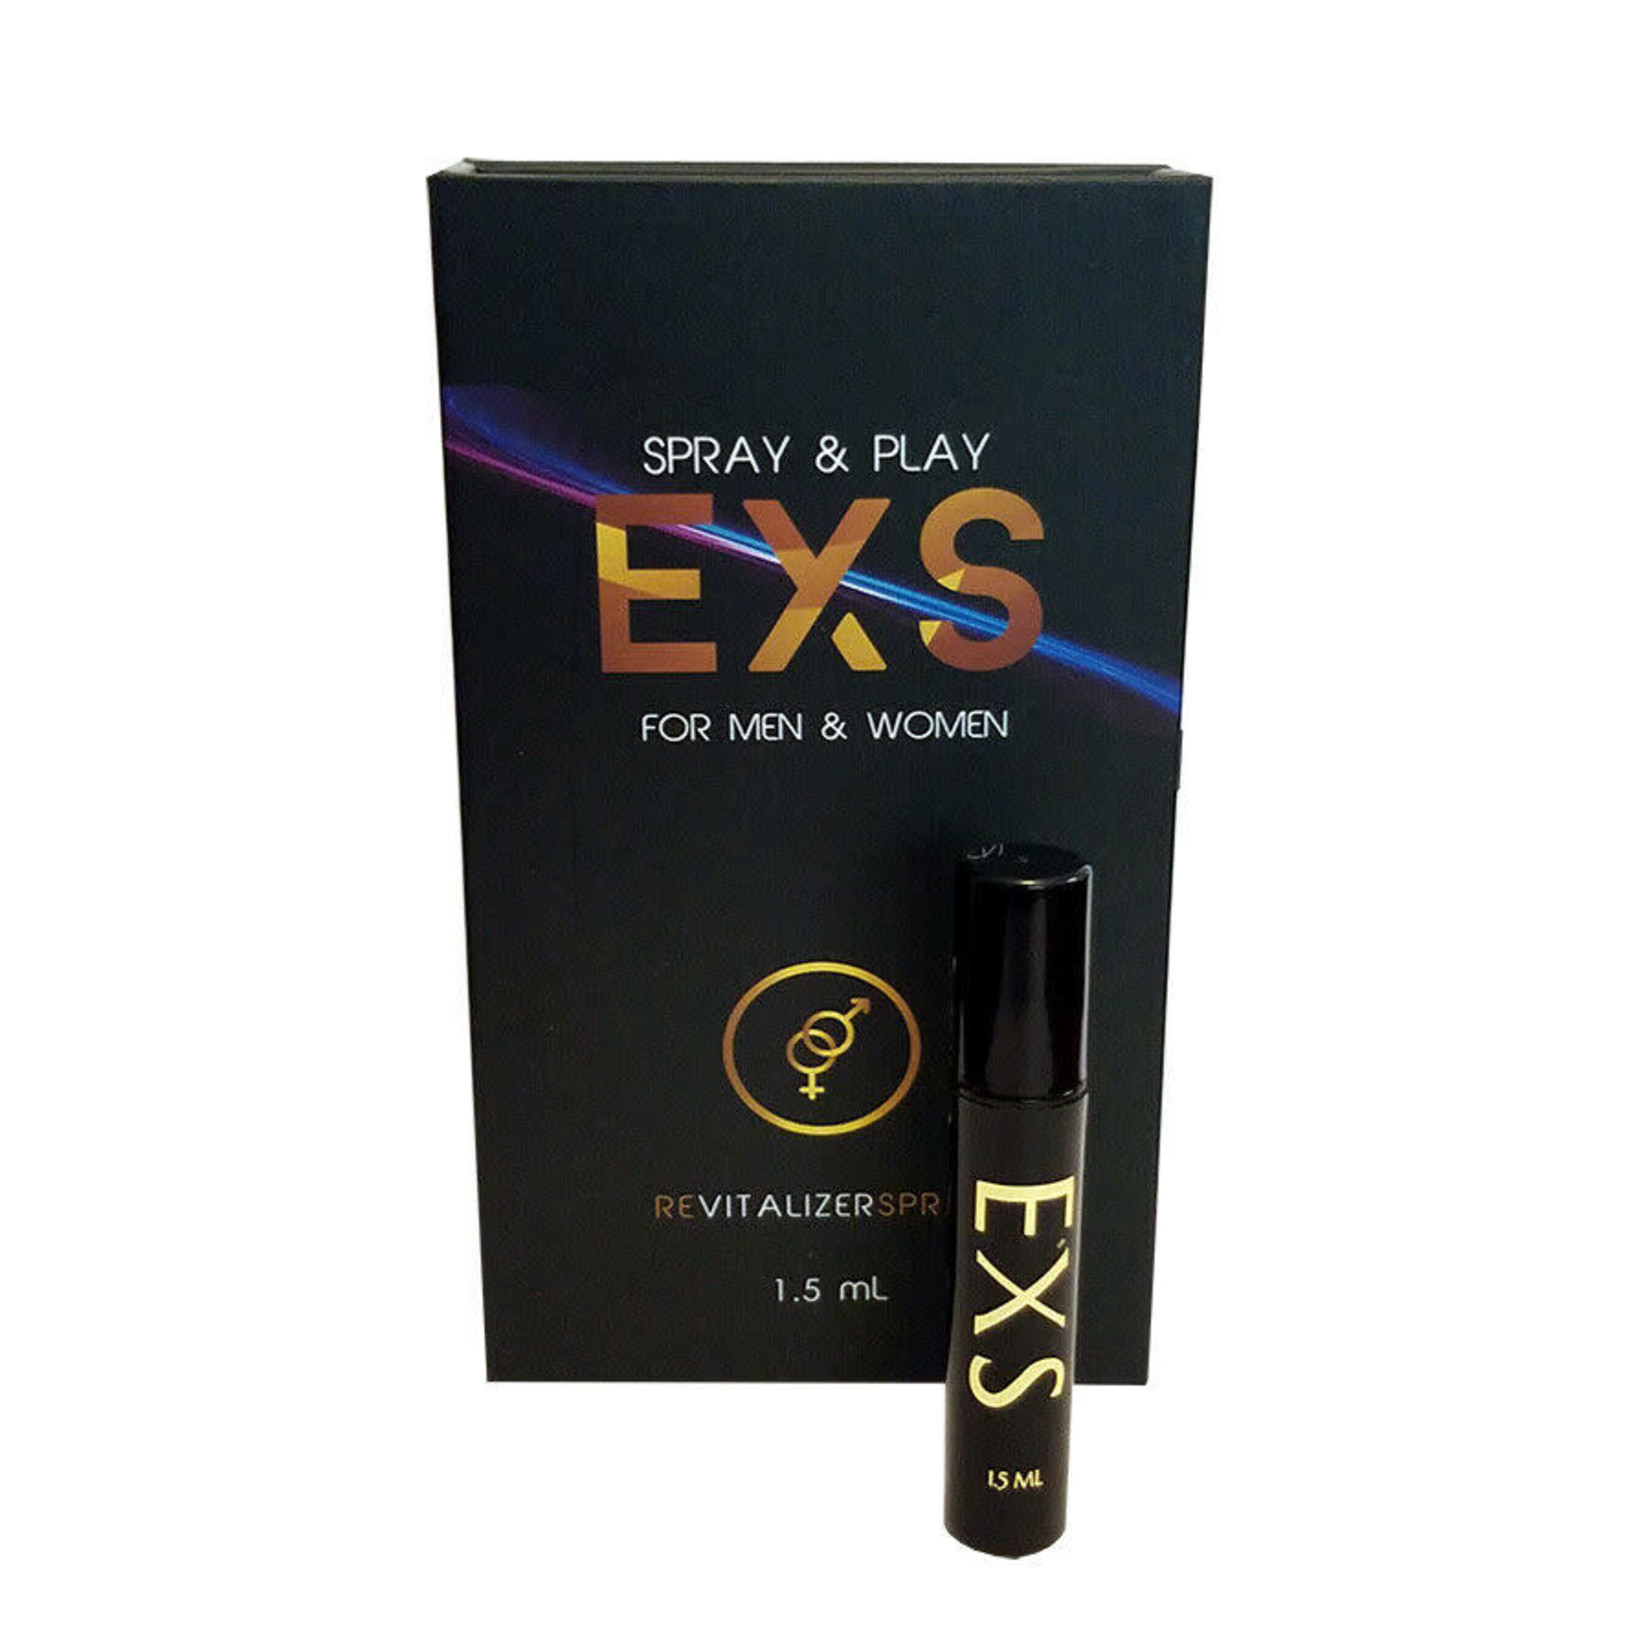 EXS Revitalizer Spray Play For Men Women 1.5mL